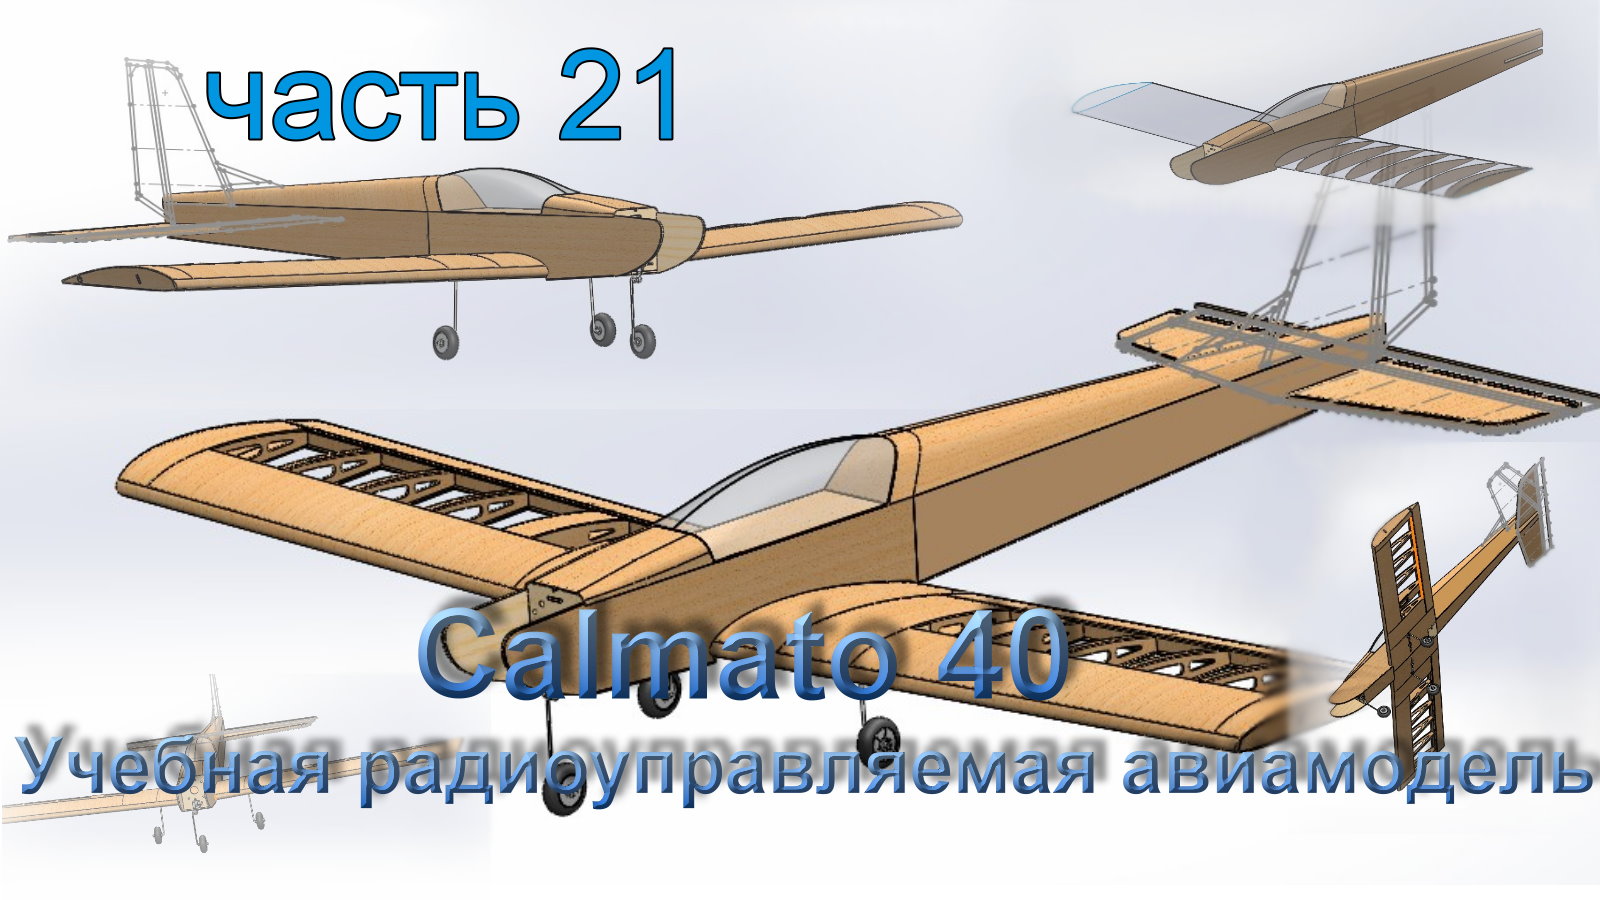 Учебная радиоуправляемая авиамодель Calmato 40 (часть 21)